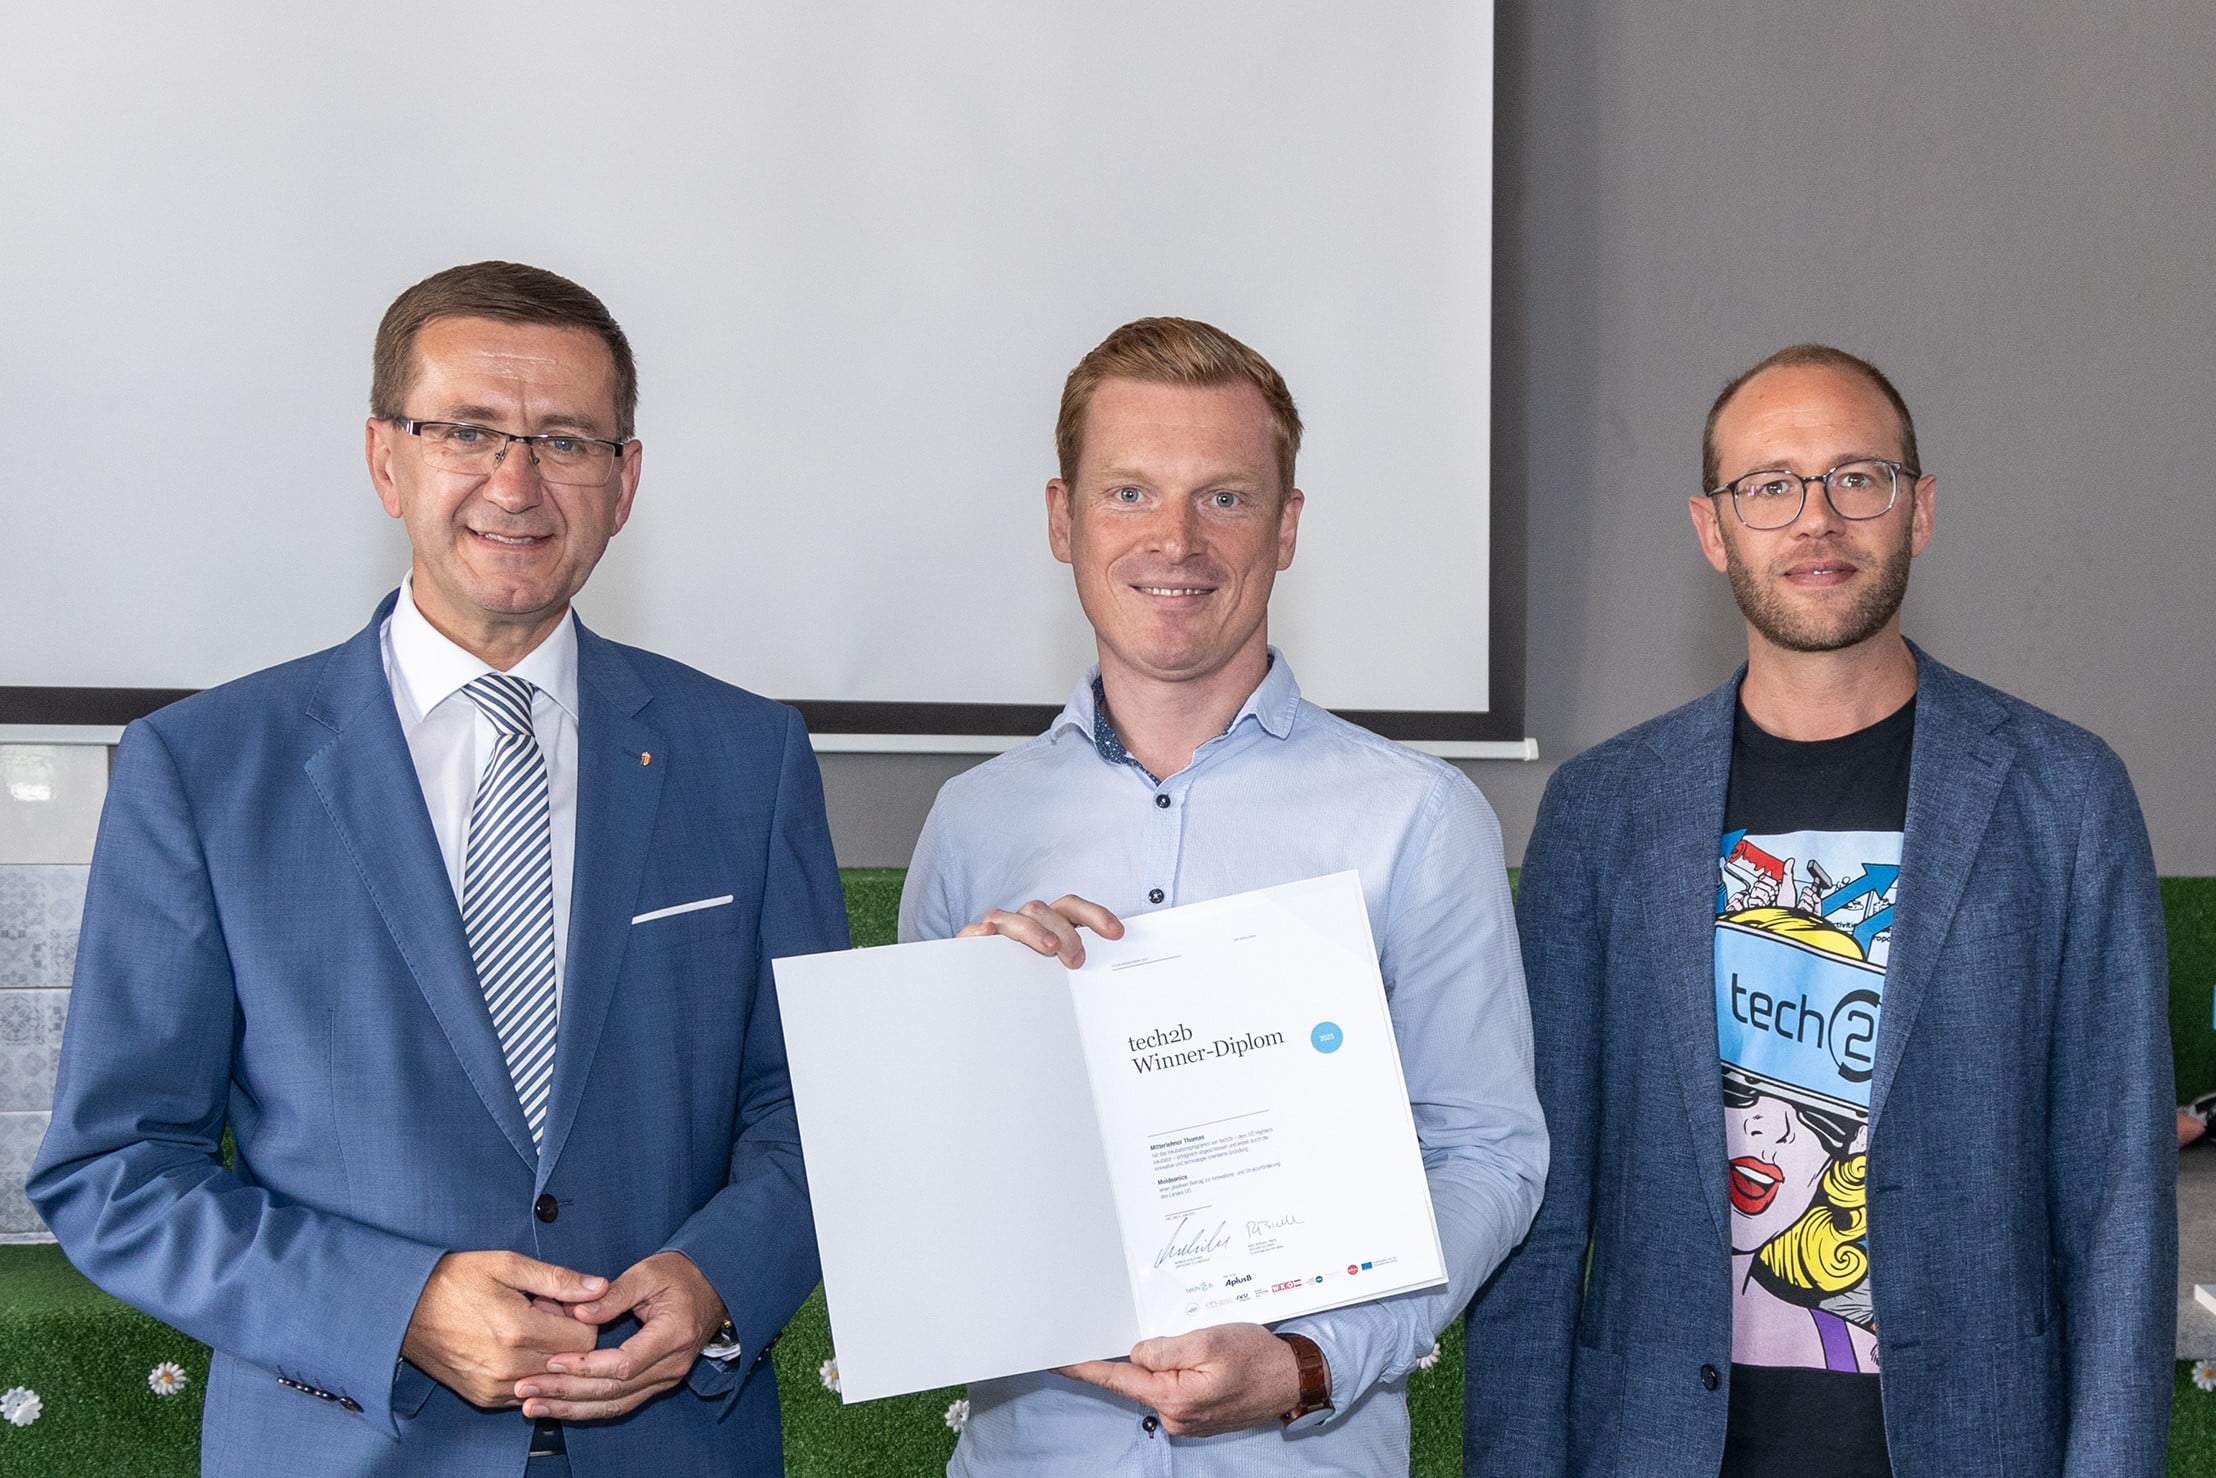 Wirtschaftslandesrat Achleitner überreicht Winner-Diplom von tech2b an Moldsonics